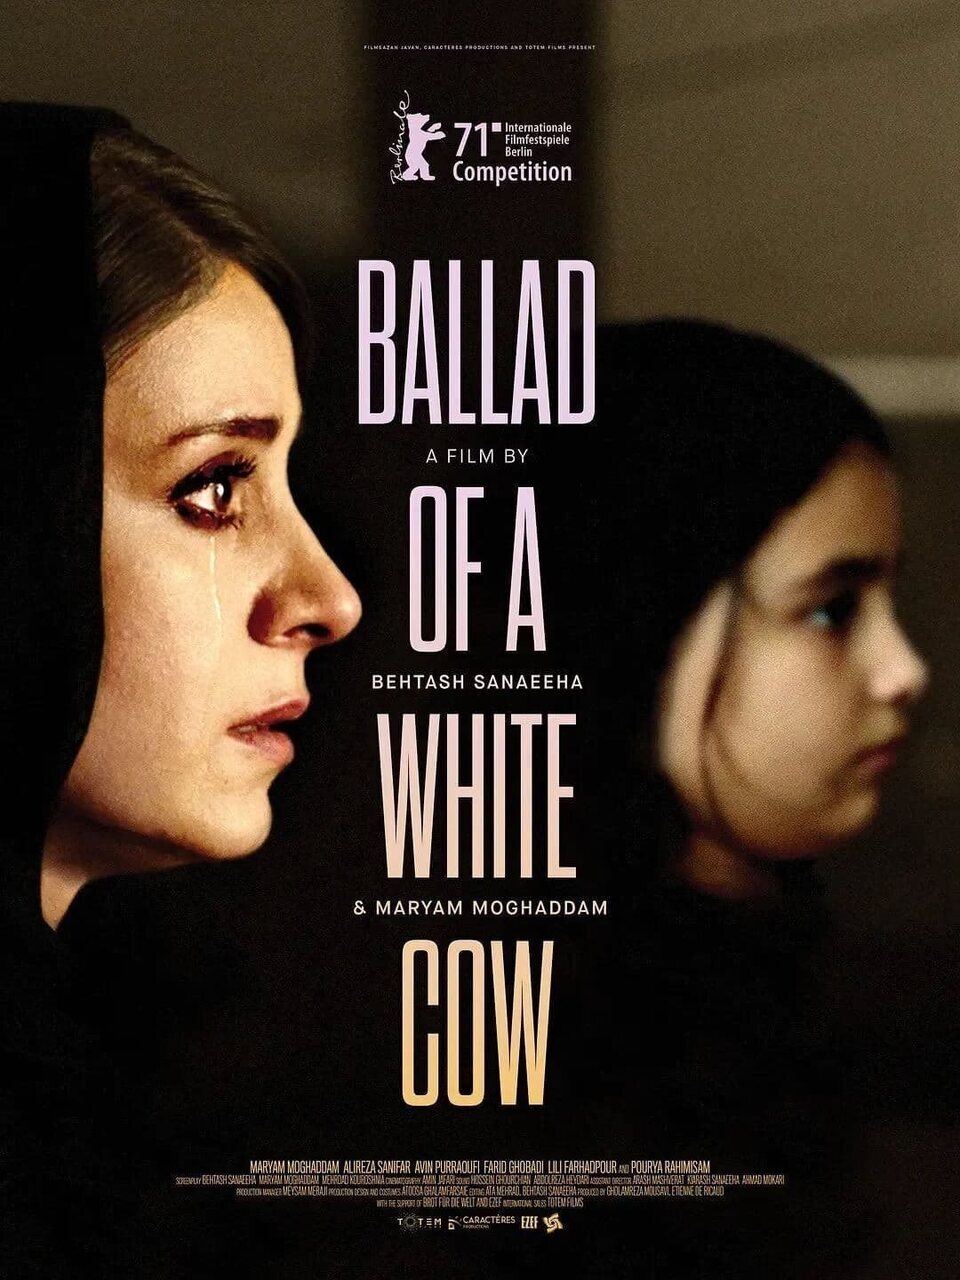 Poster of Ballad of a White Cow - Internacional